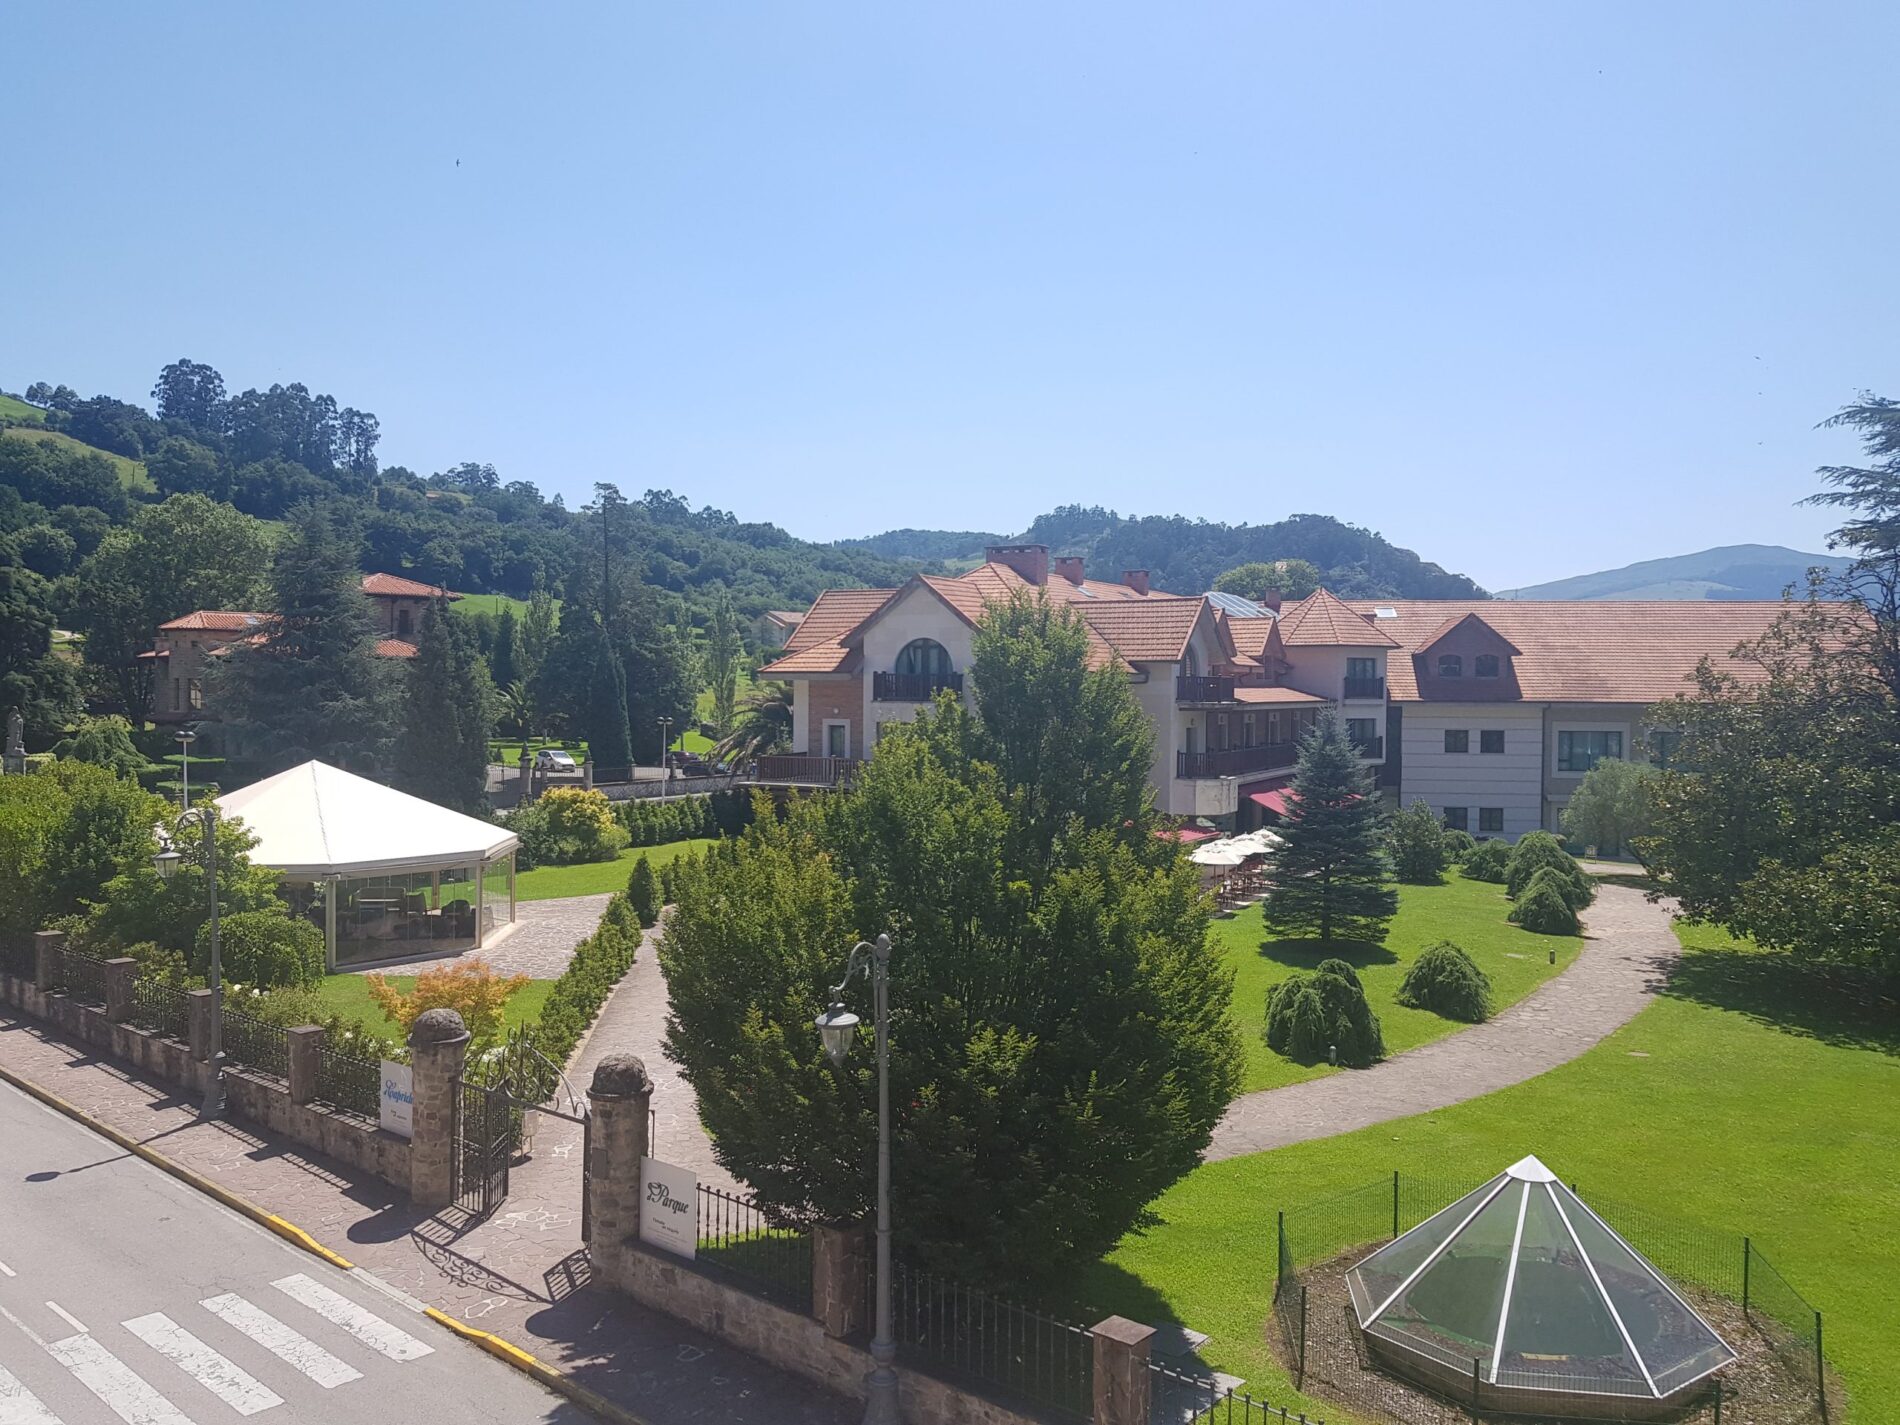 Terraza y Jardines del Gran Hotel Balneario Spa de Puente Viesgo en Cantabria